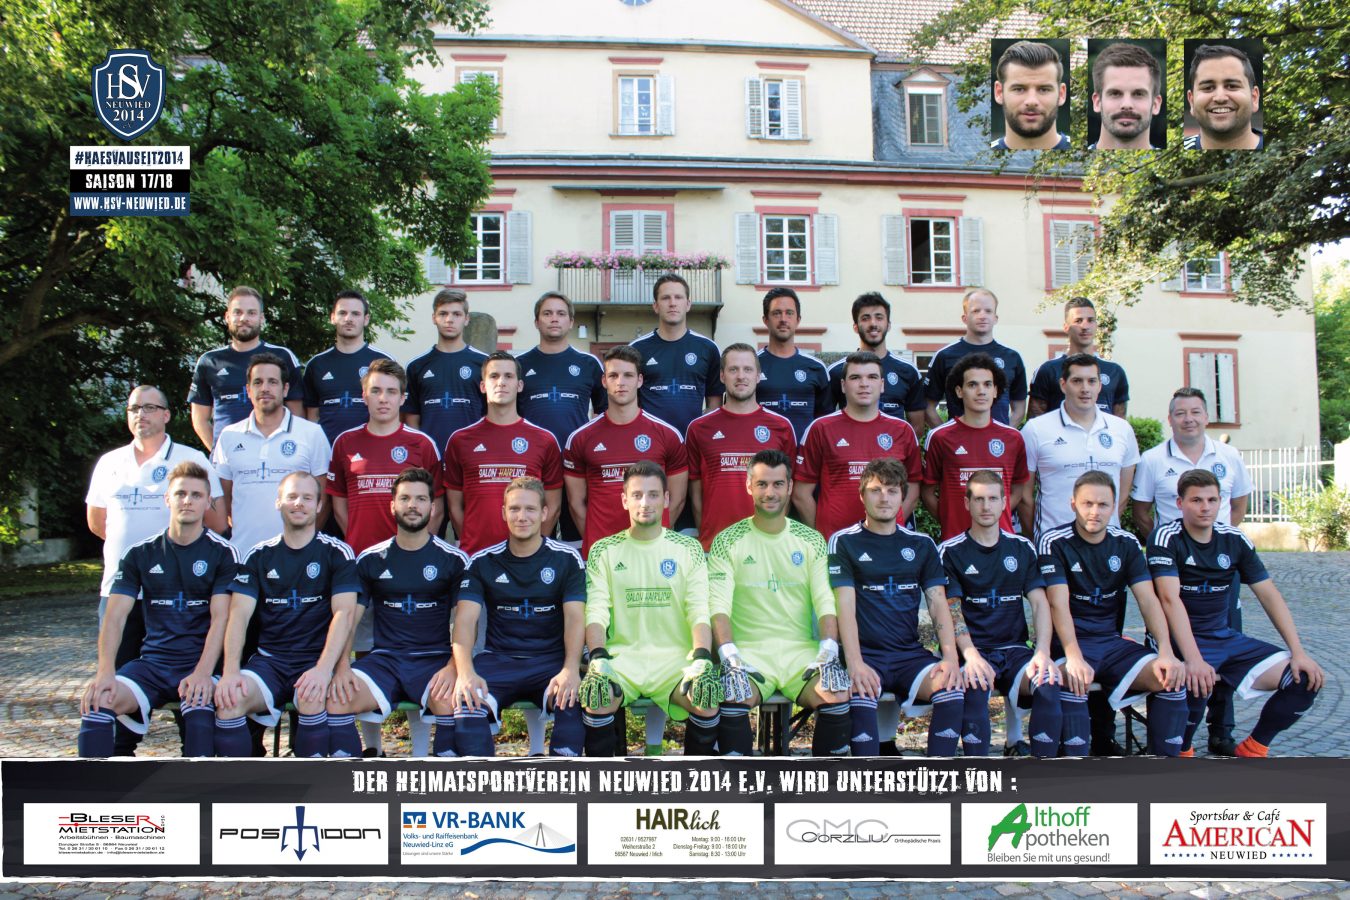 Die Mannschaft vom Heimatsportverein für die Saison 2017/18.